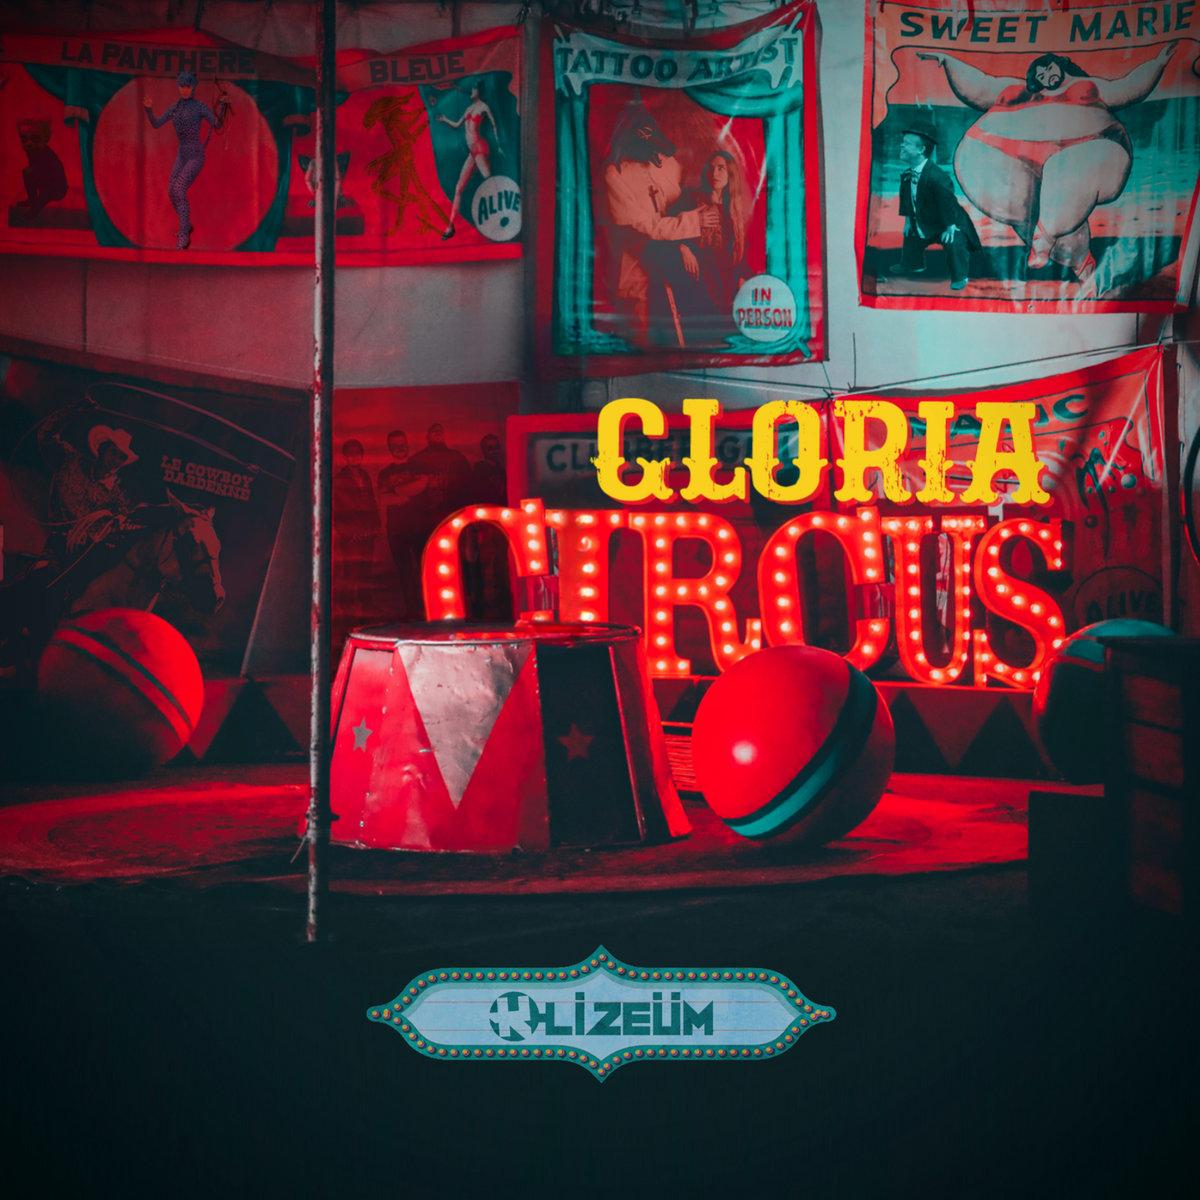 K lizeum gloria circus